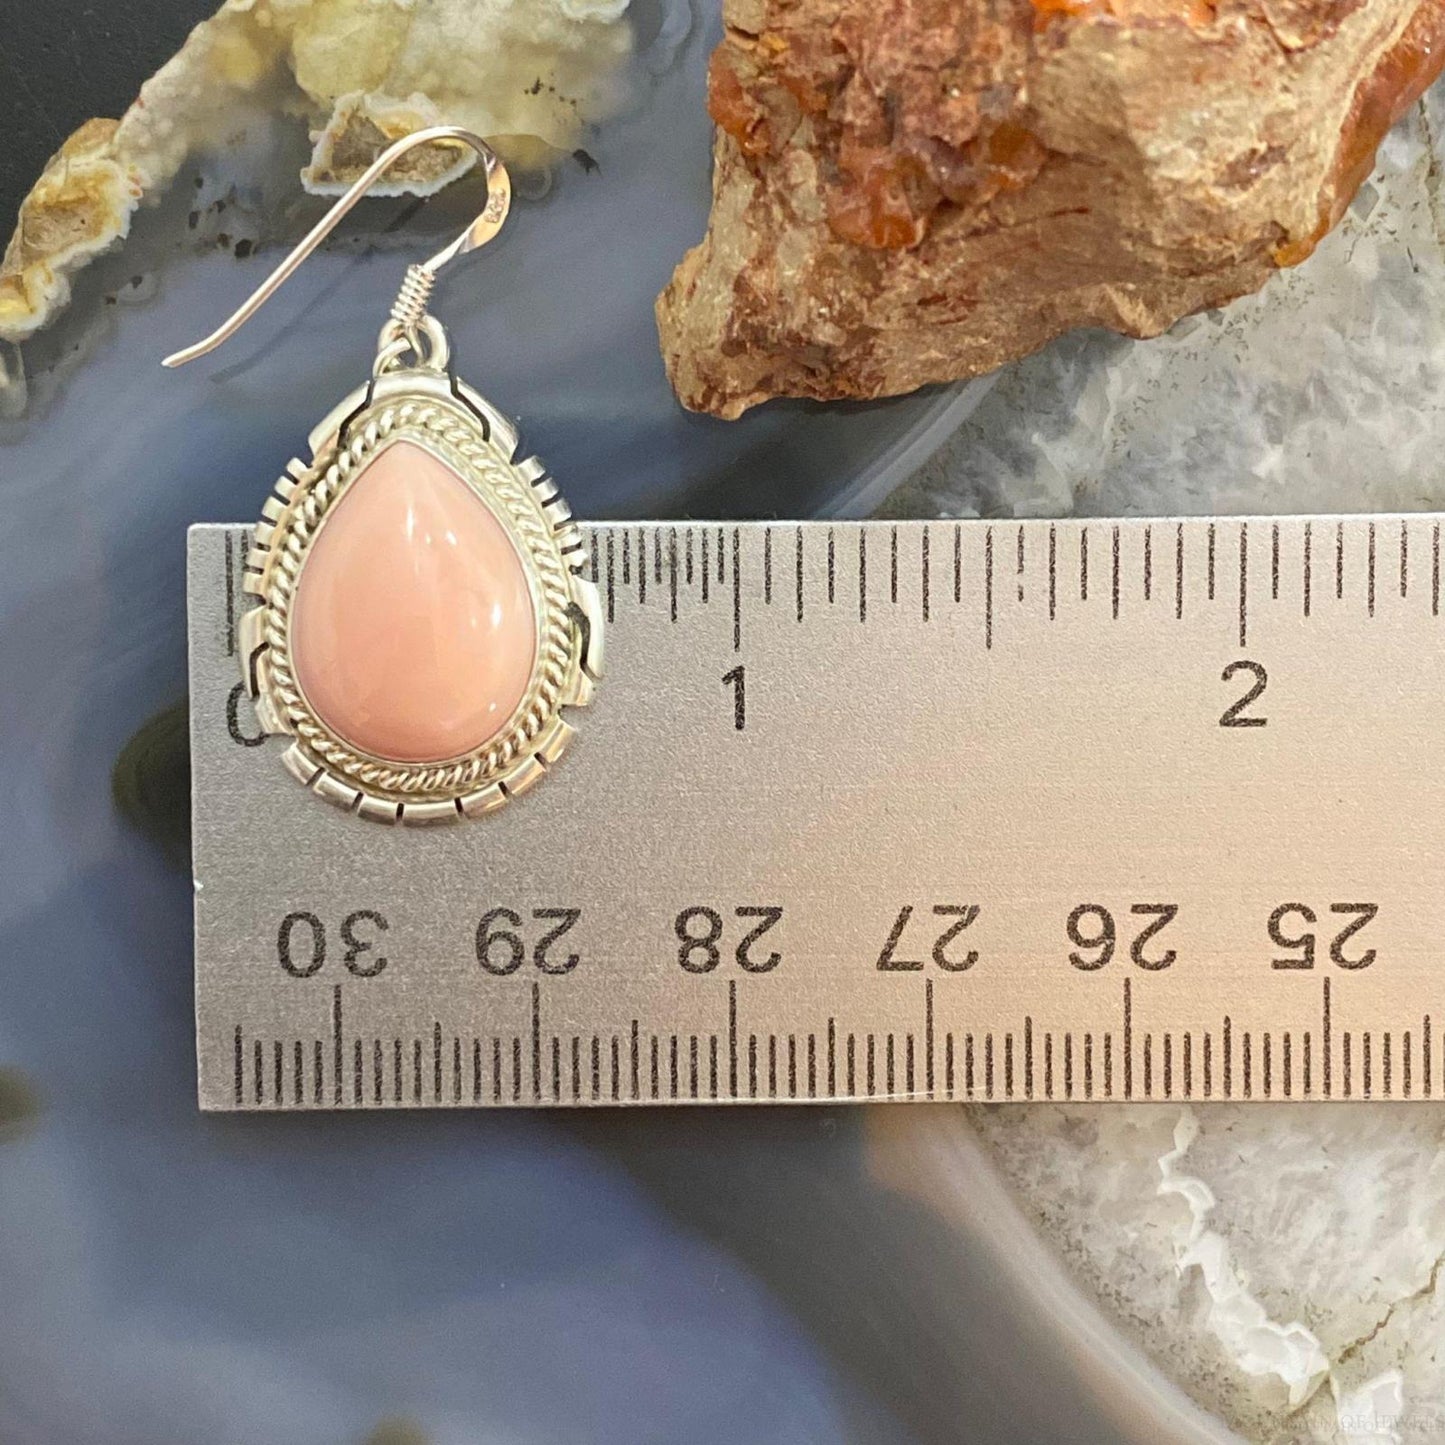 P. Skeets Native American Sterling Silver Pink Conch Shell Teardrop Dangle Earrings For Women